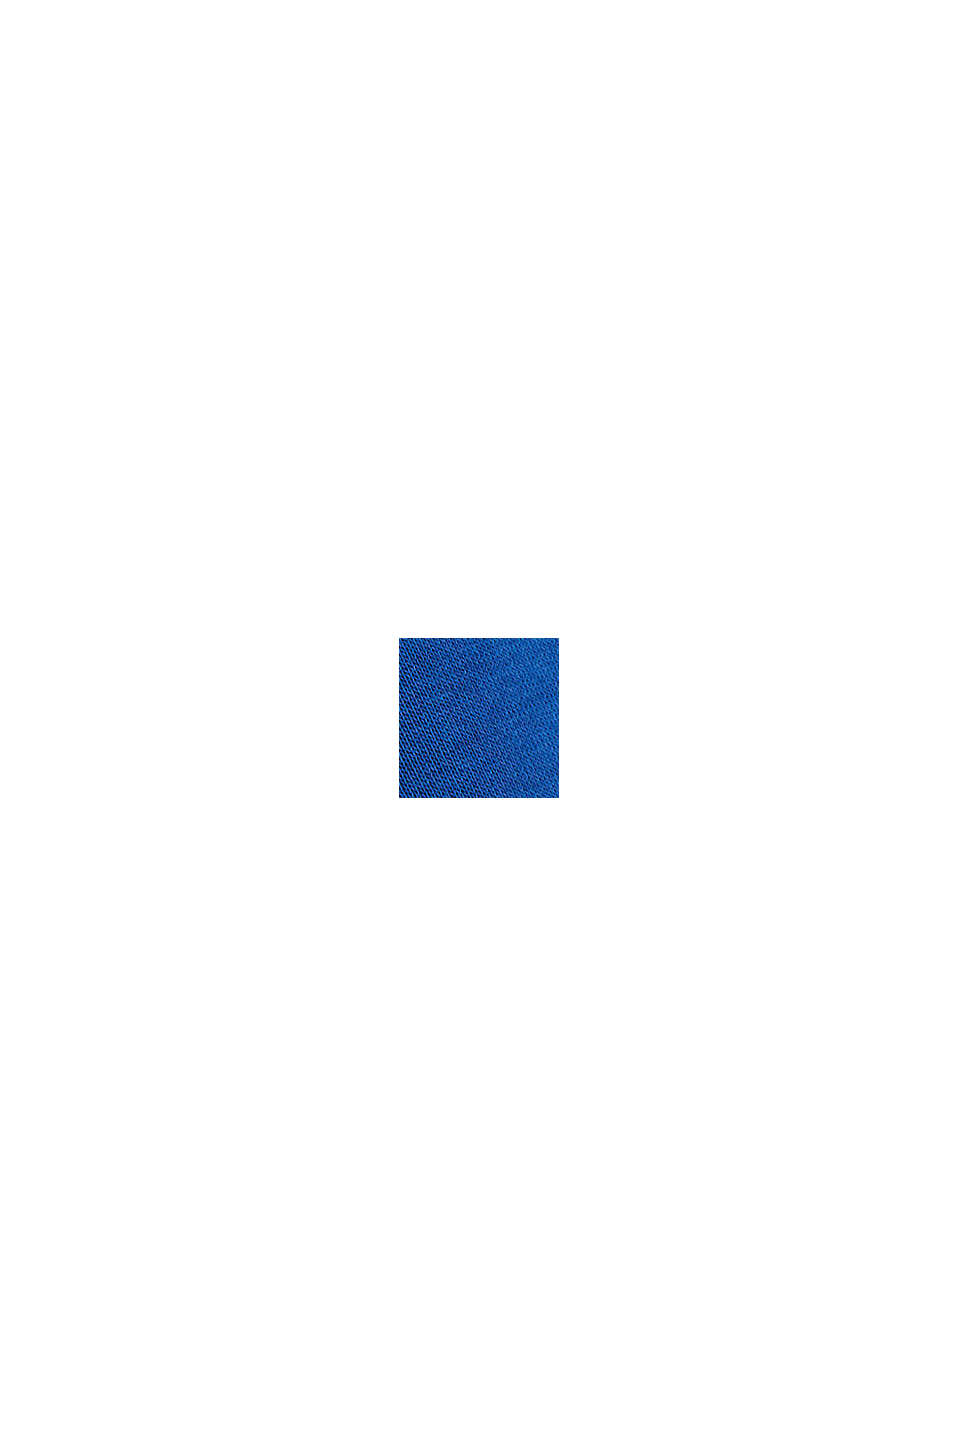 Bluza z kapturem z wyhaftowanym logo, mieszanka bawełniana, BRIGHT BLUE, swatch